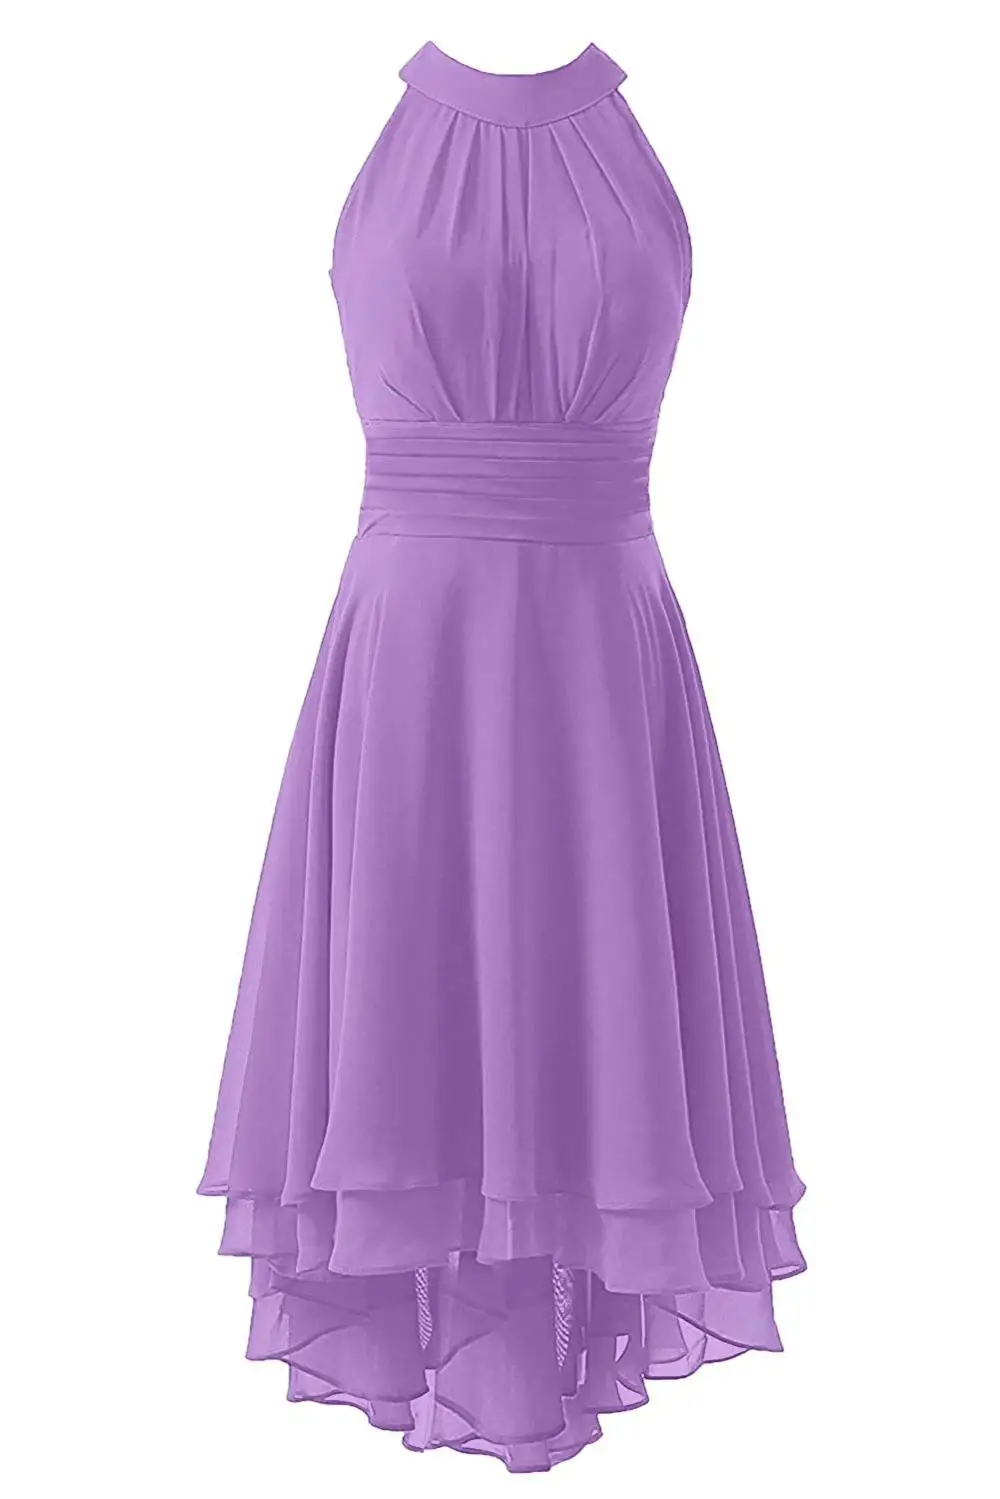 JaneVini популярное шифоновое Сиреневое платье для свадебной вечеринки, выпускного вечера, Высокие Низкие зеленые платья подружки невесты, женские платья подружки невесты длиной до середины икры - Цвет: Lilac